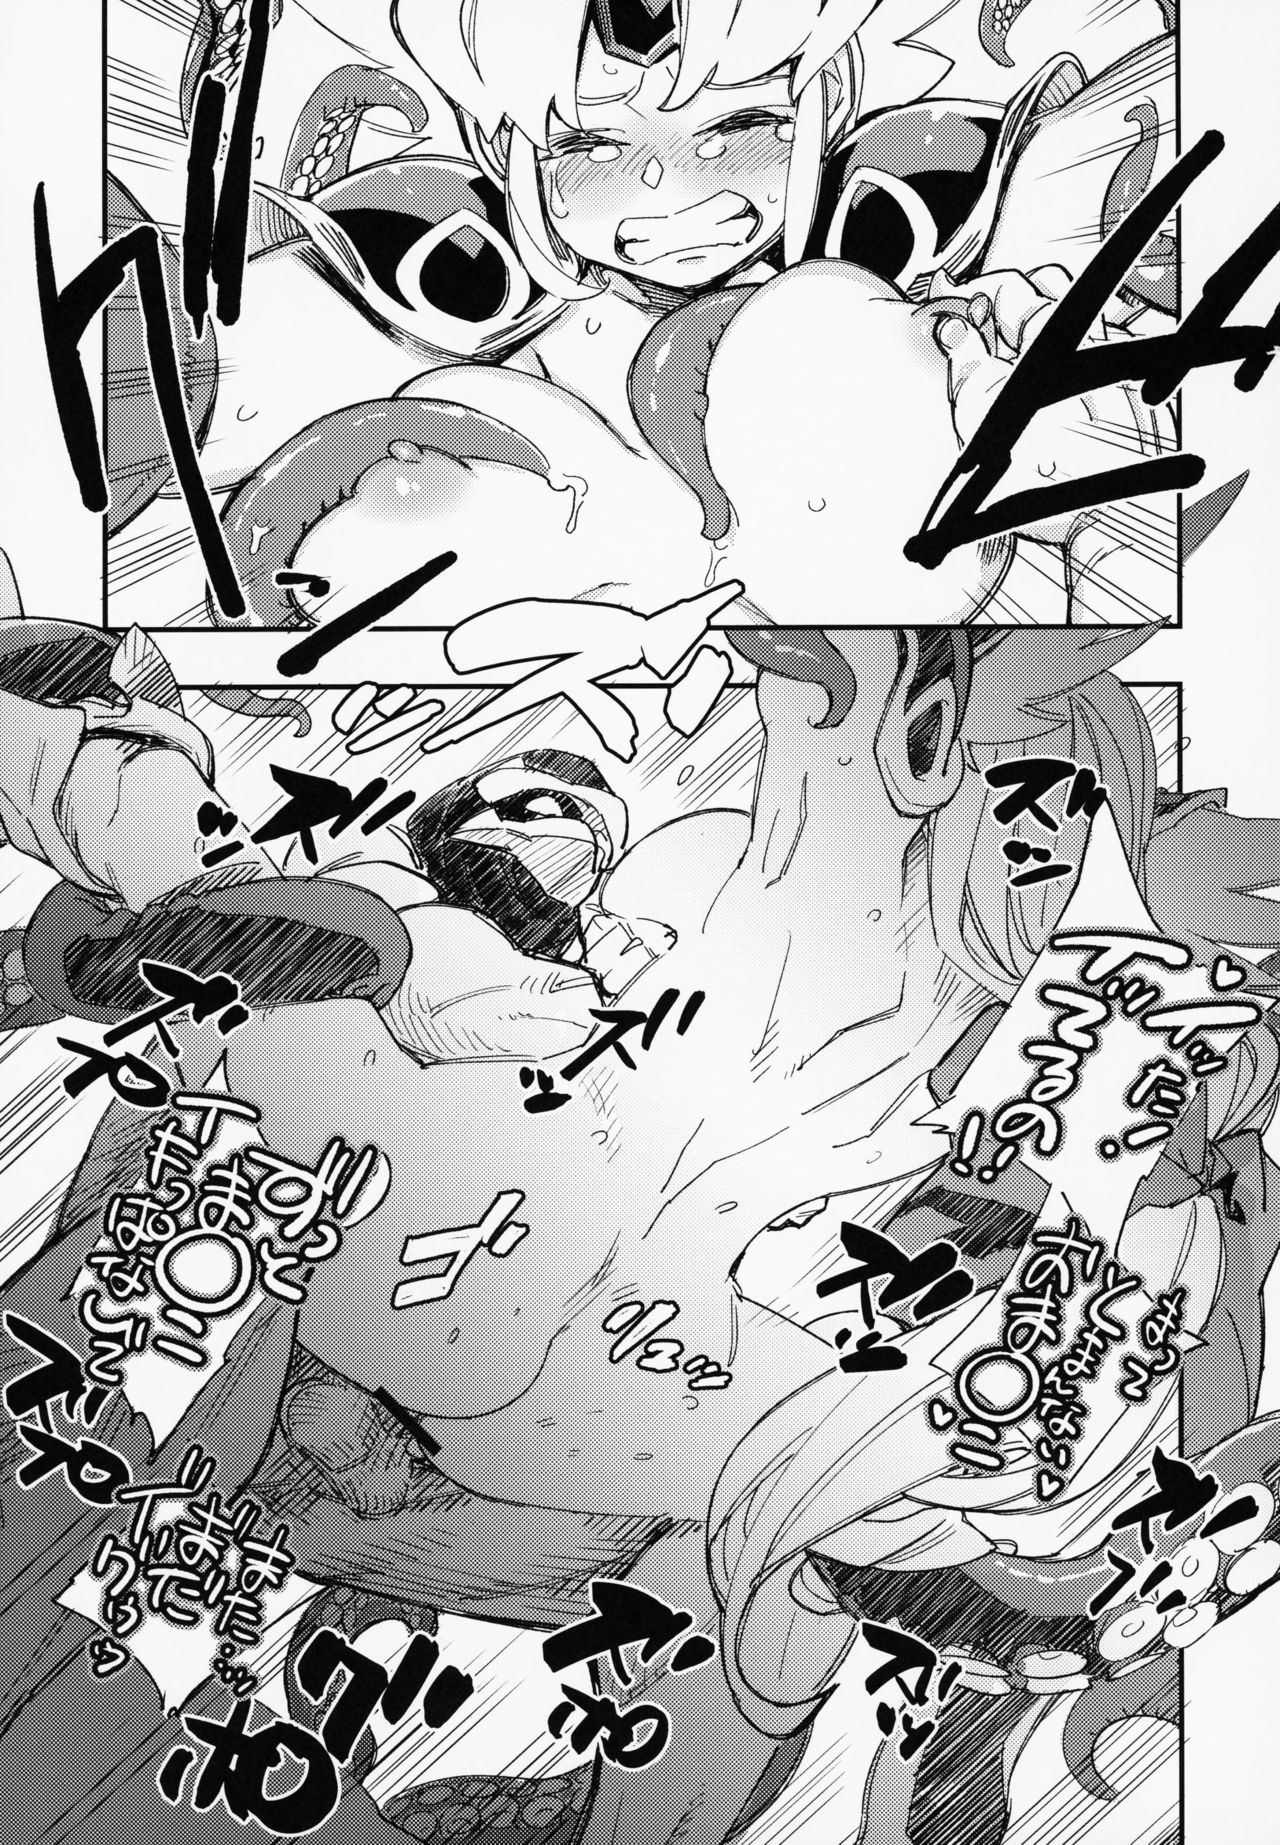 (COMIC1☆15) [ハライセカイワイ (ゆっ栗栖)] アマゾネスの王女様が海女に転職したらタコの触手でアヘ顔アクメ習得しちゃう! (聖剣伝説3)